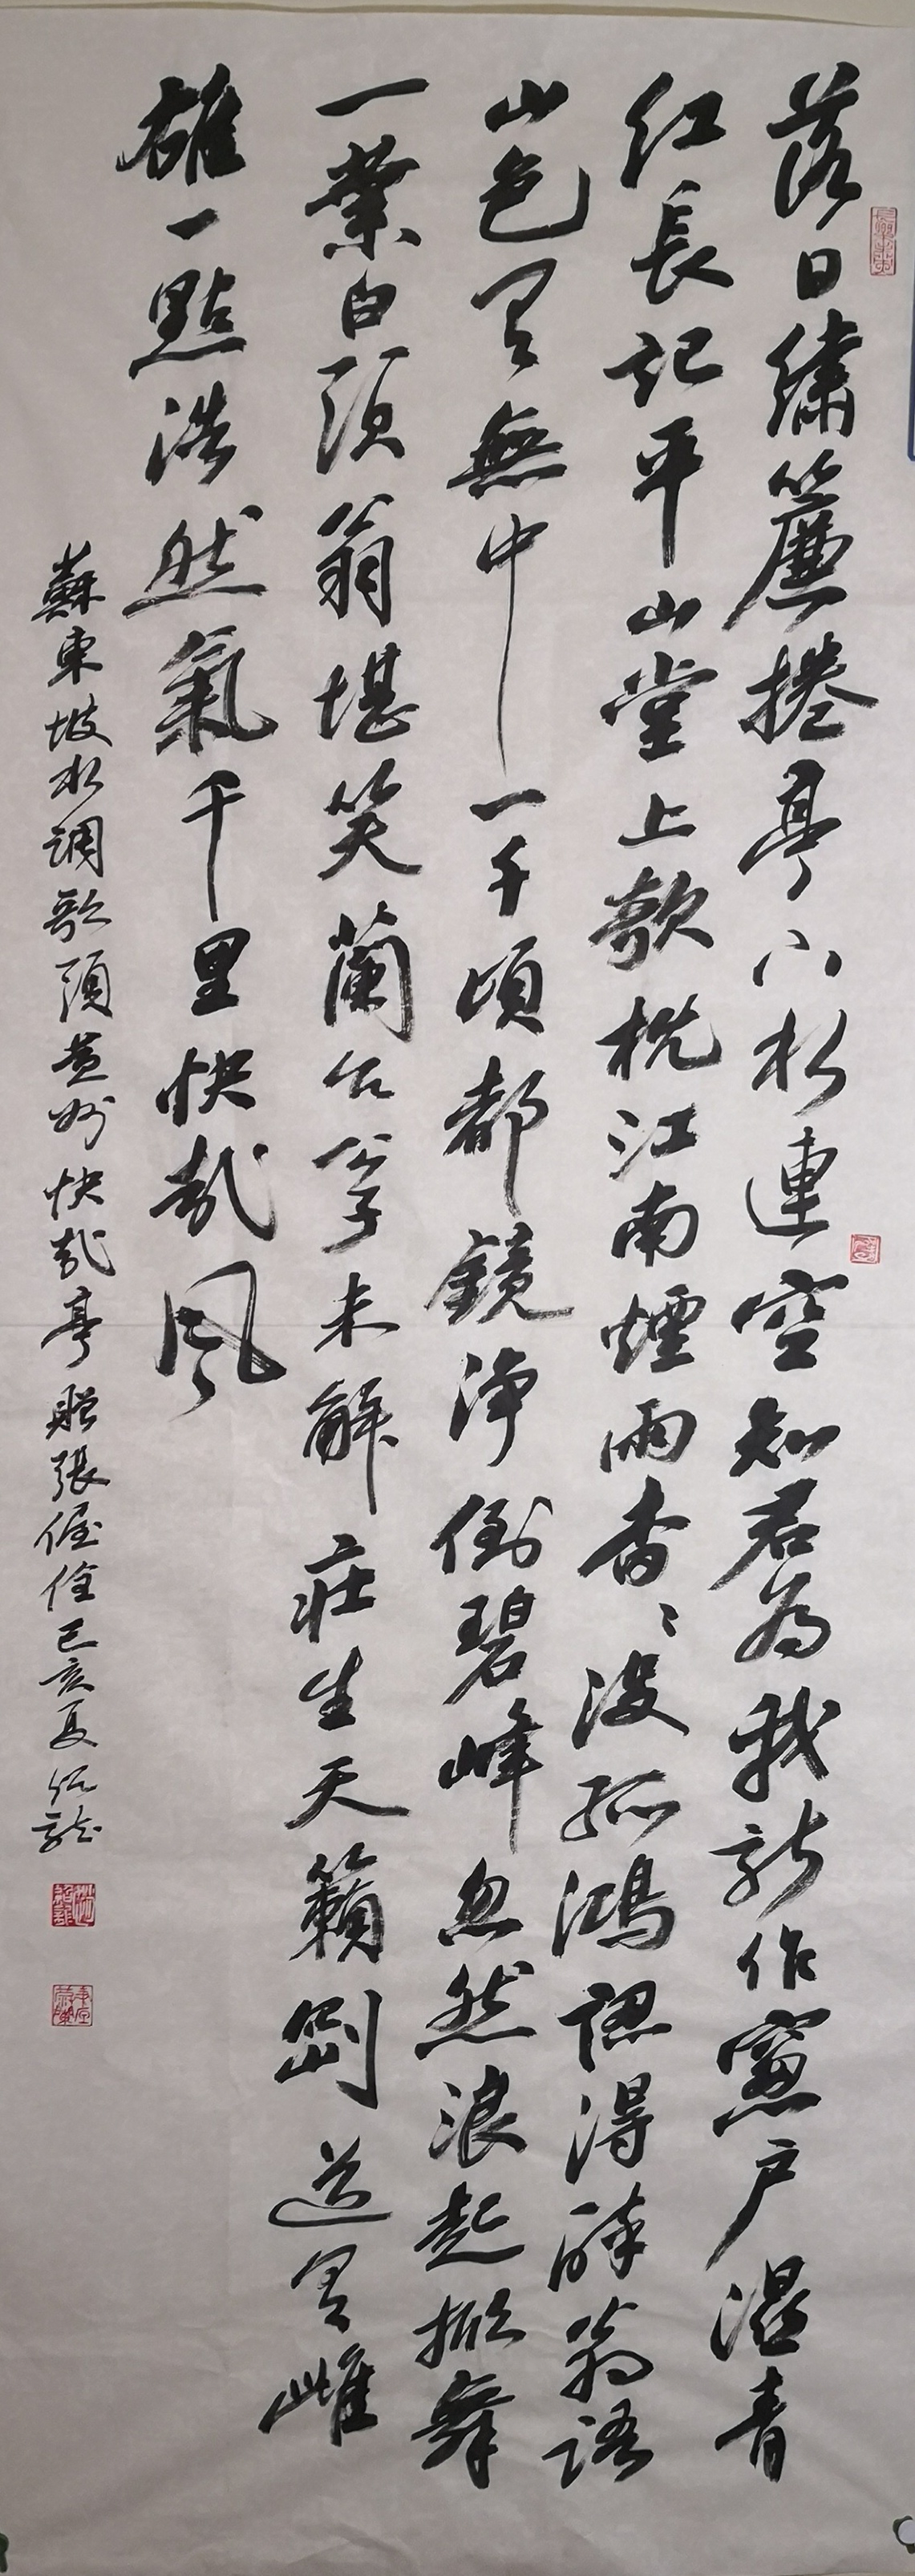 生命的嬗变——赵绍龙和他的书法艺术